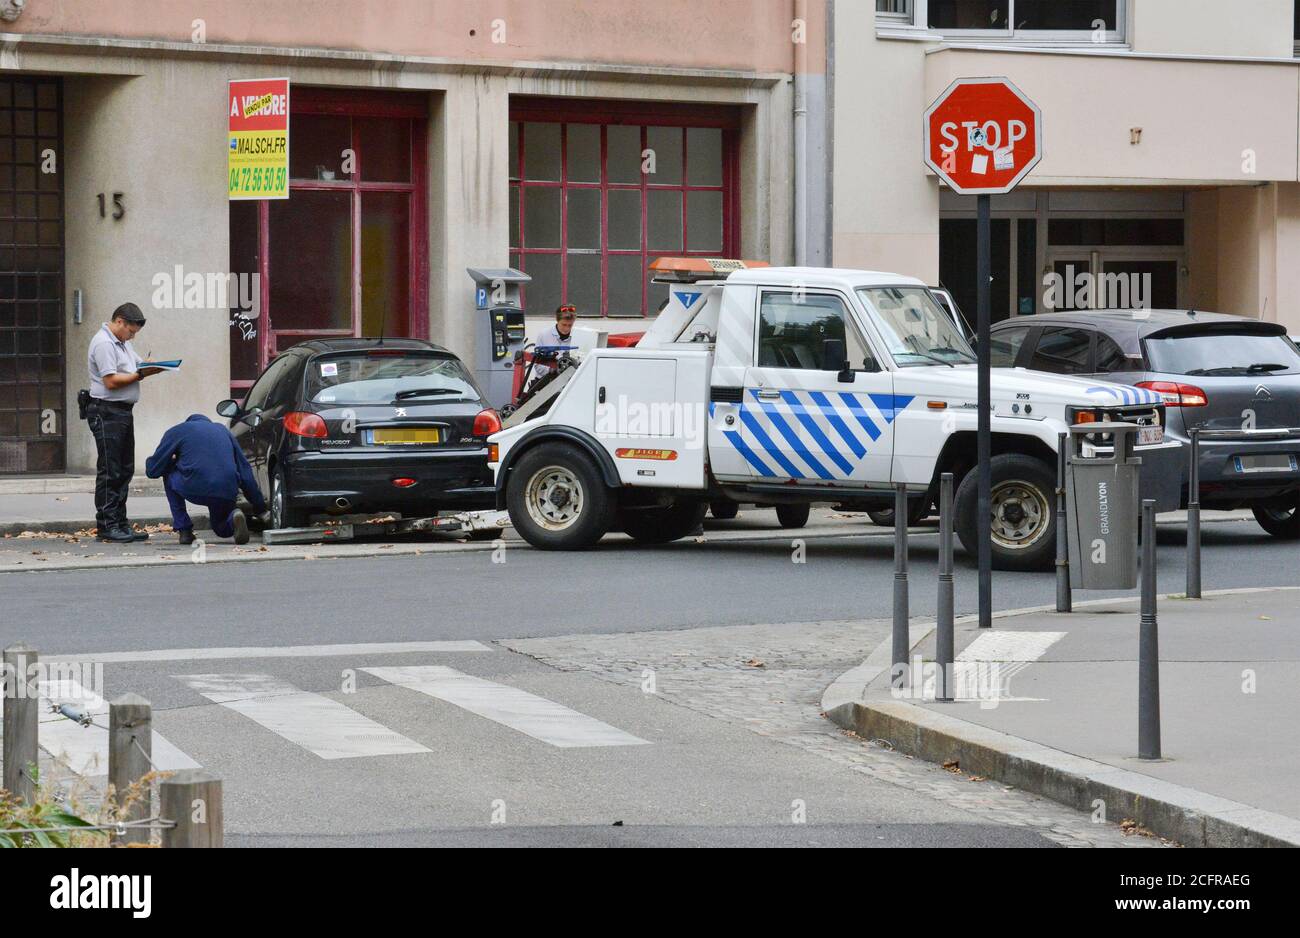 Lione (Francia centro-orientale): 2016/09/20. La rimozione della vettura è impurita, il veicolo causa un ostacolo. Foto Stock